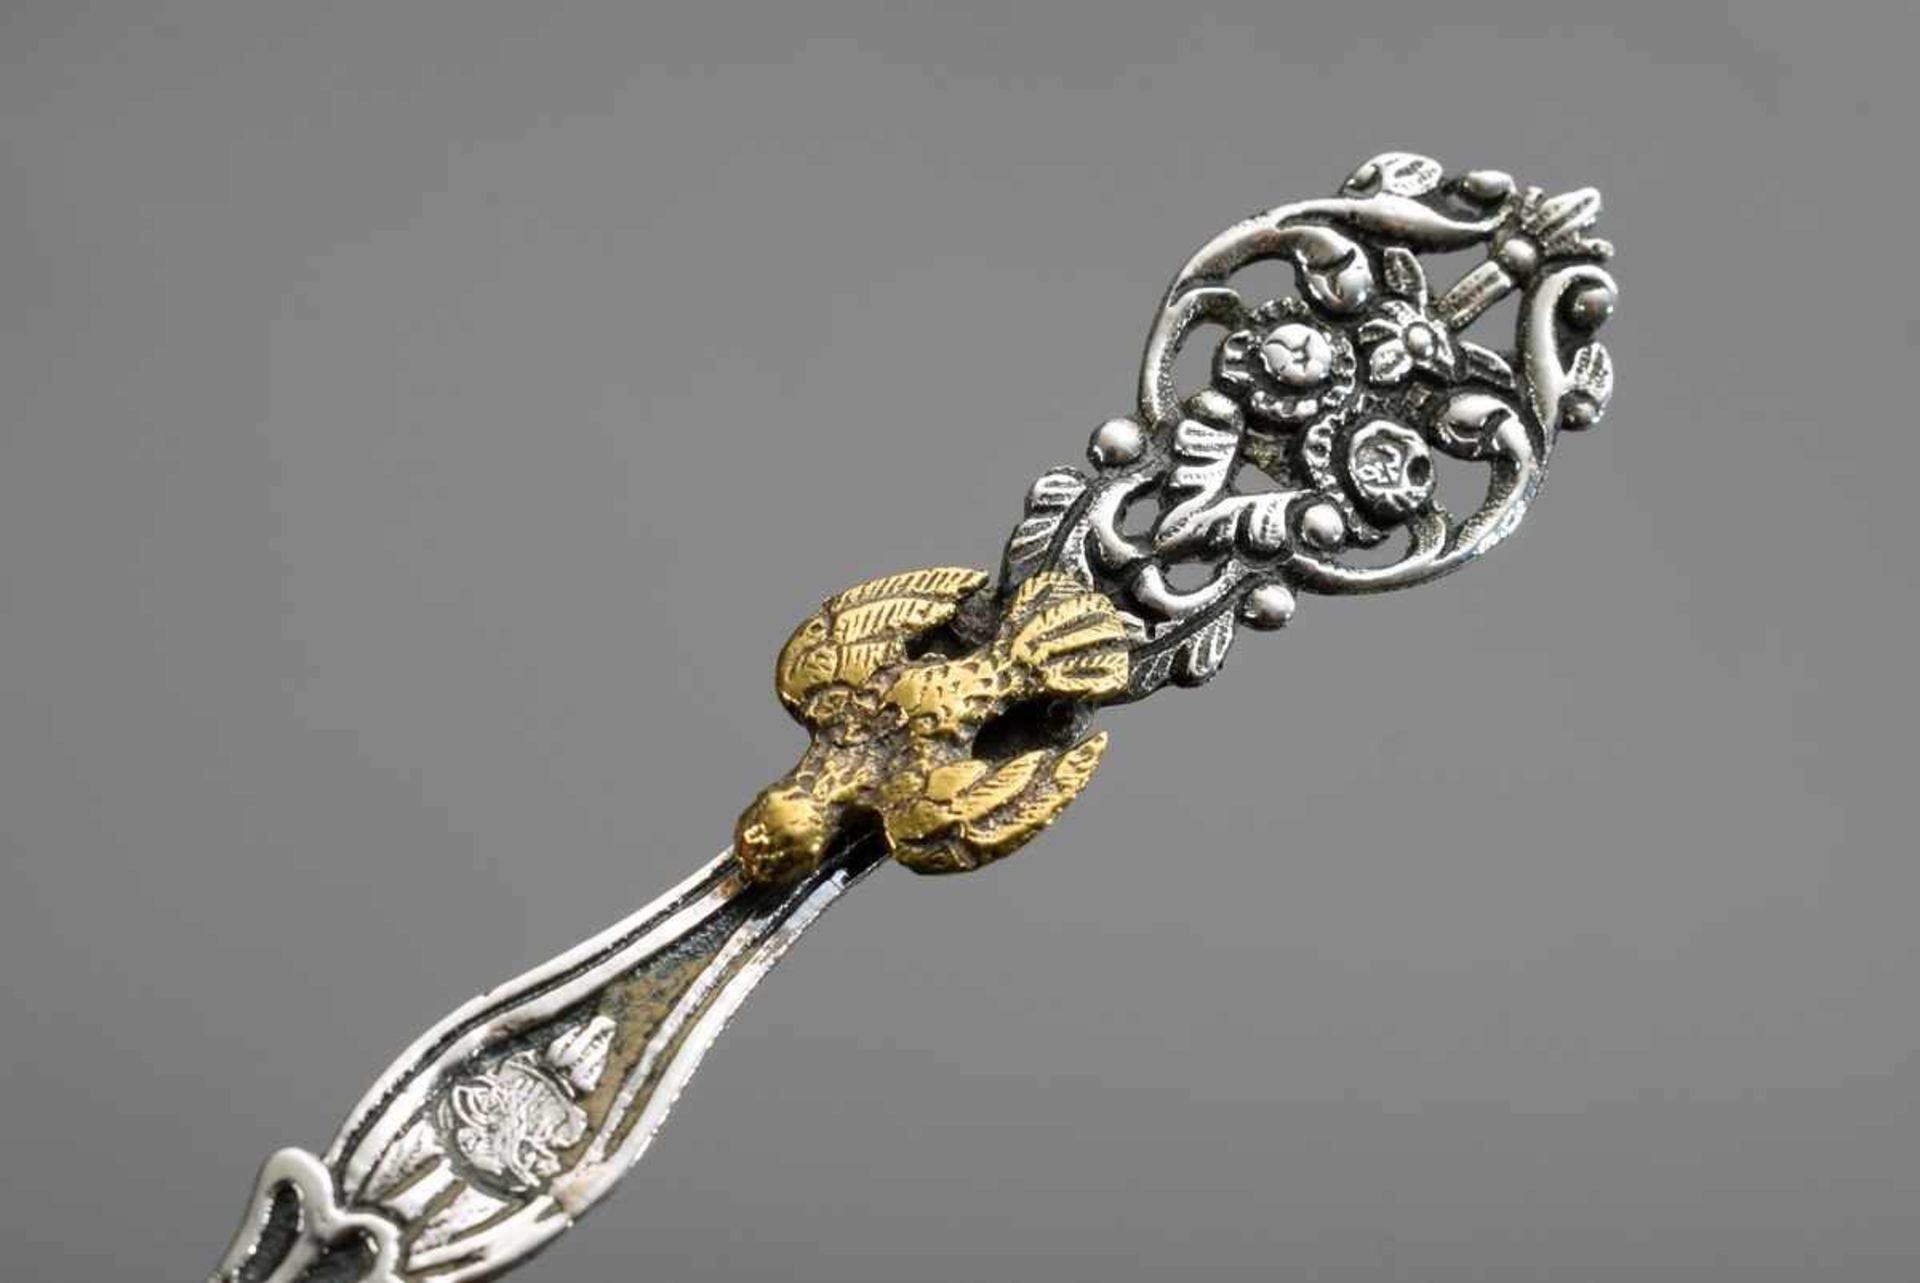 2 Osmanische Silber Löffel mit getriebenem Dekor "Adler" und "Schlangen" sowie Messing Aufsätzen " - Image 3 of 3